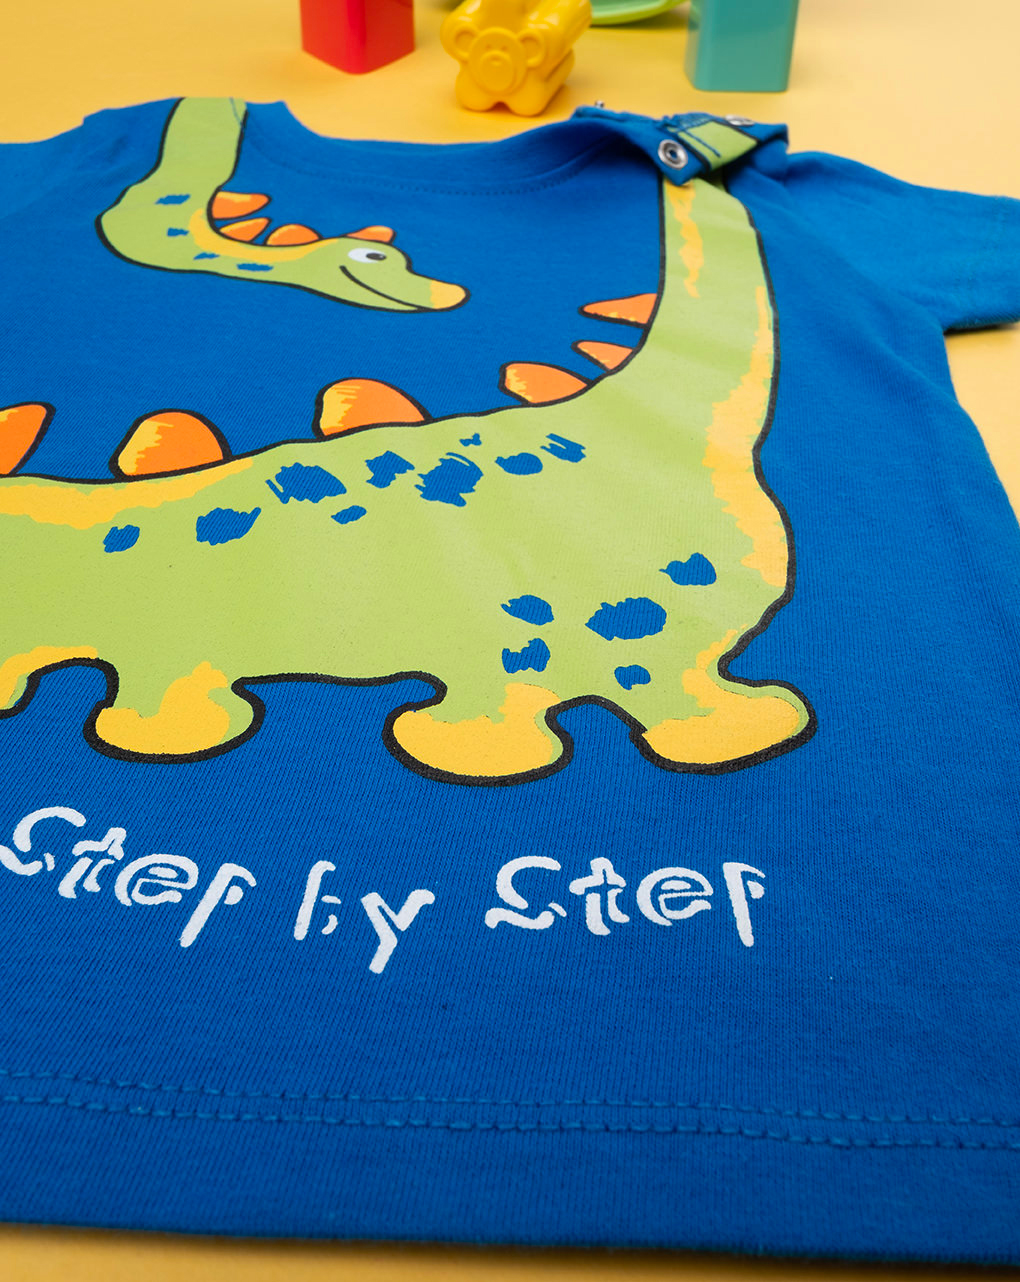 βρεφικό t-shirt μπλε με δεινόσαυρο για αγόρι - Prénatal